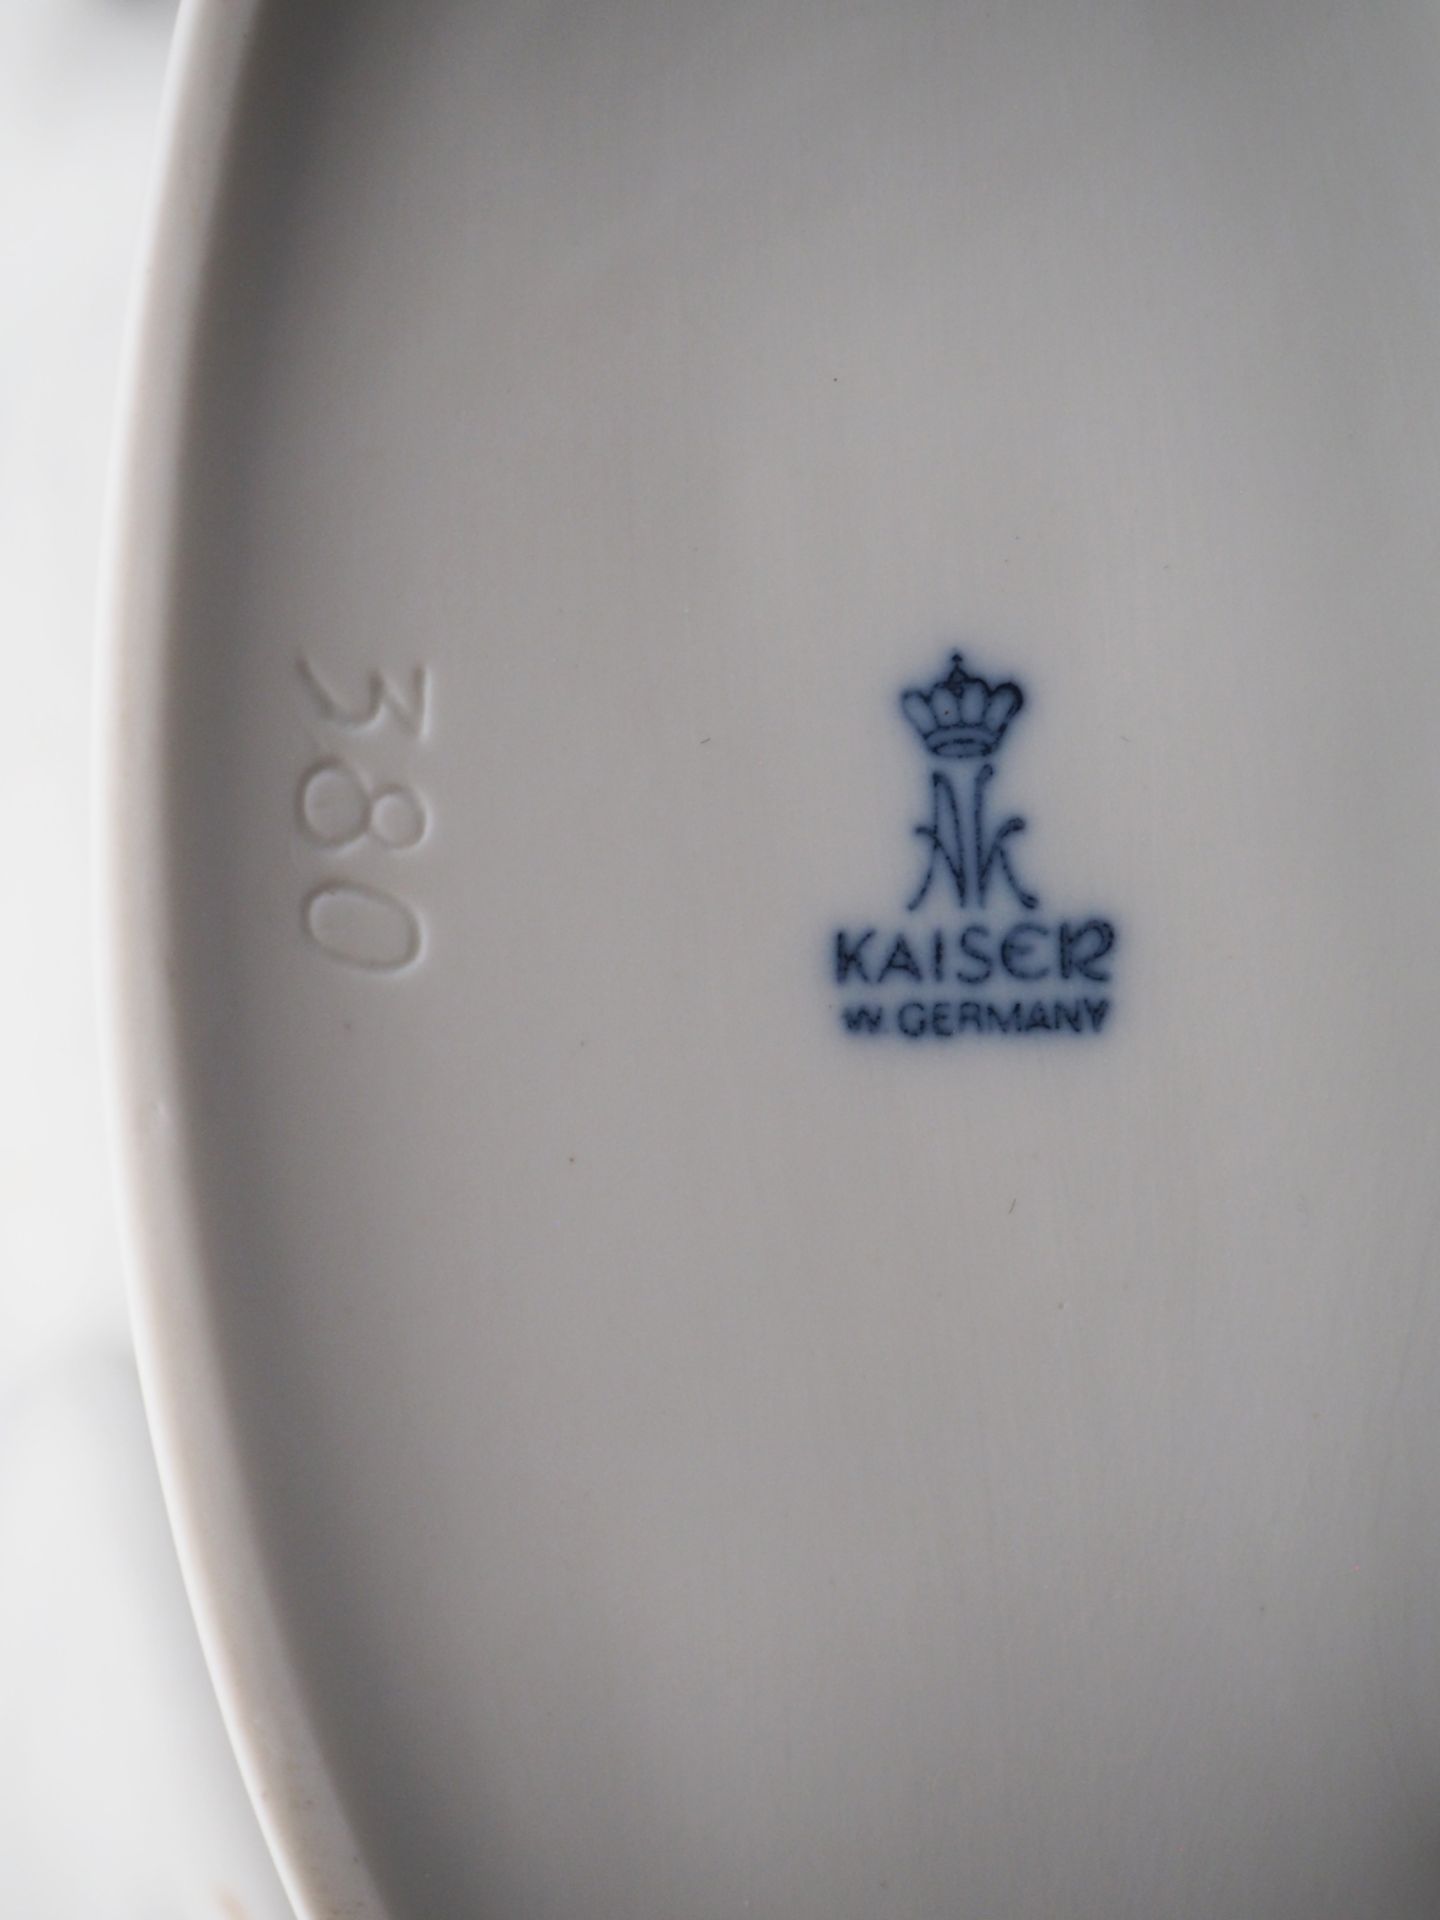 3 Bisquitporzellanfiguren KAISER, W. Germany, weiß gefasst: - Bild 6 aus 9